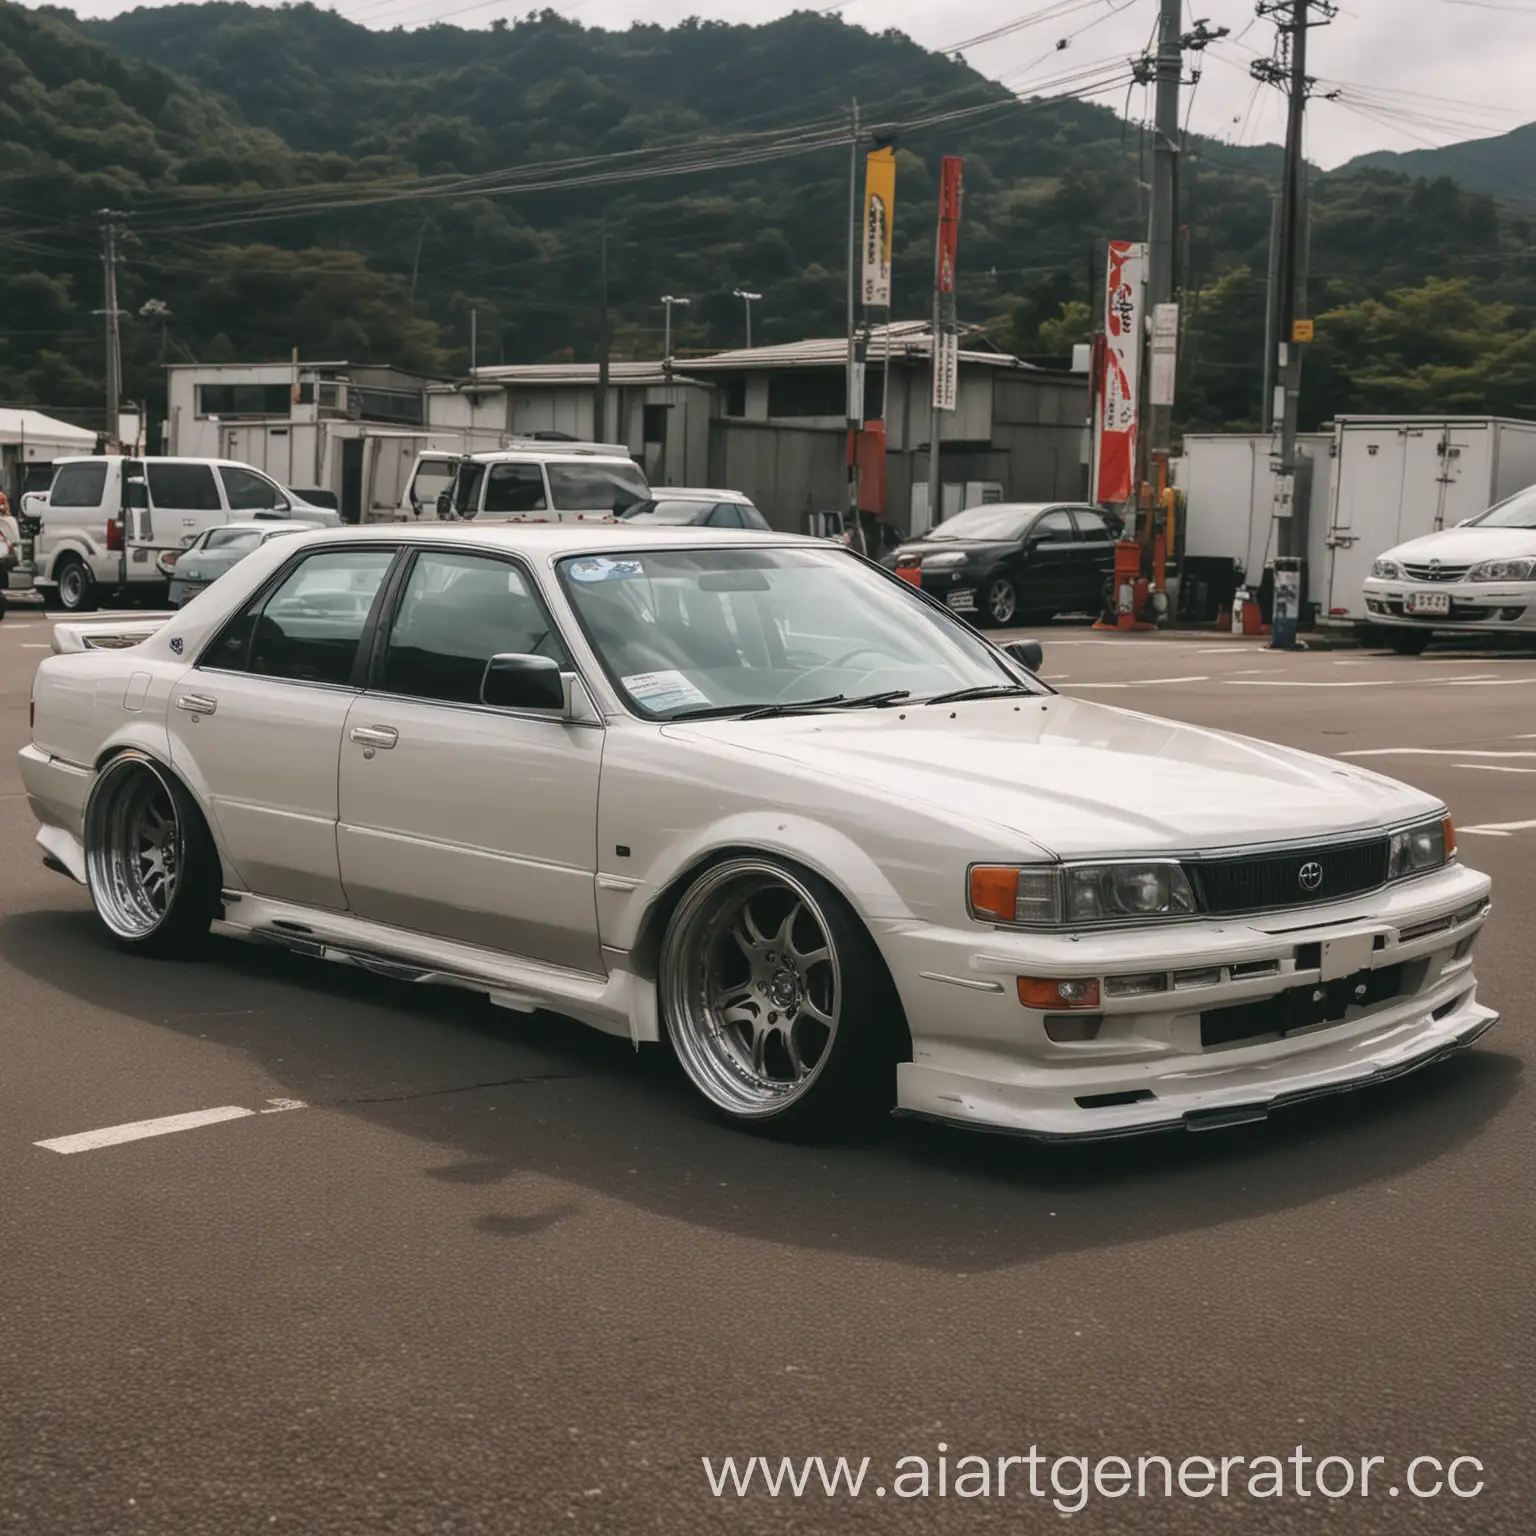 Vintage-Japan-90s-Aesthetic-Toyota-Mark-2-Drifting-Scene